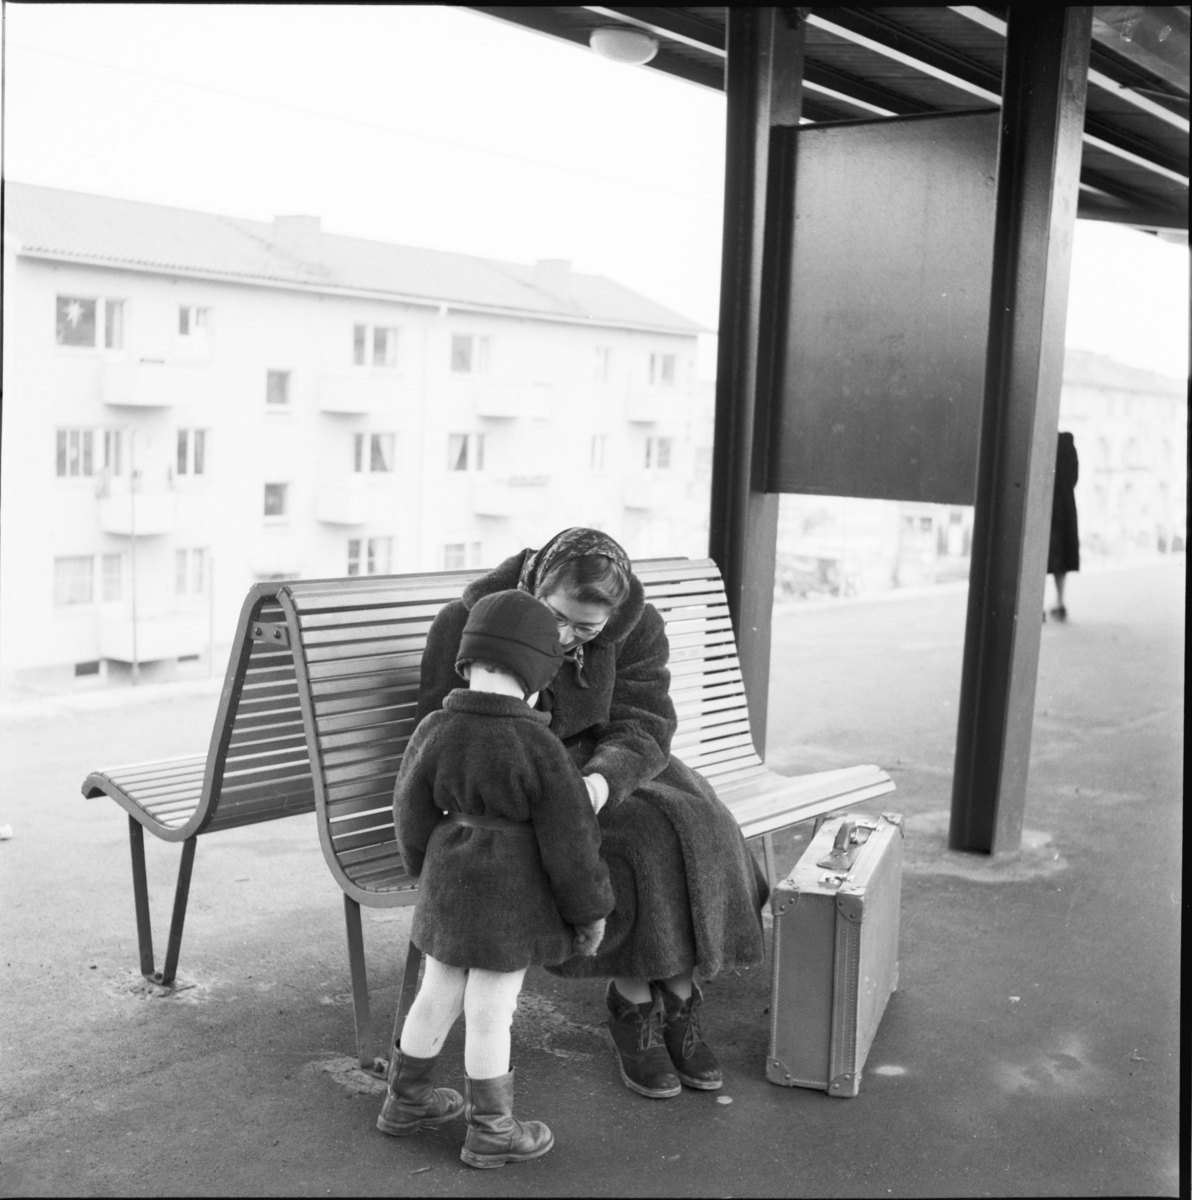 Västra tunnelbanan, Abrahamsbergs tunnelbanestation.
Tunnelbanebänk med kvinna och barn.